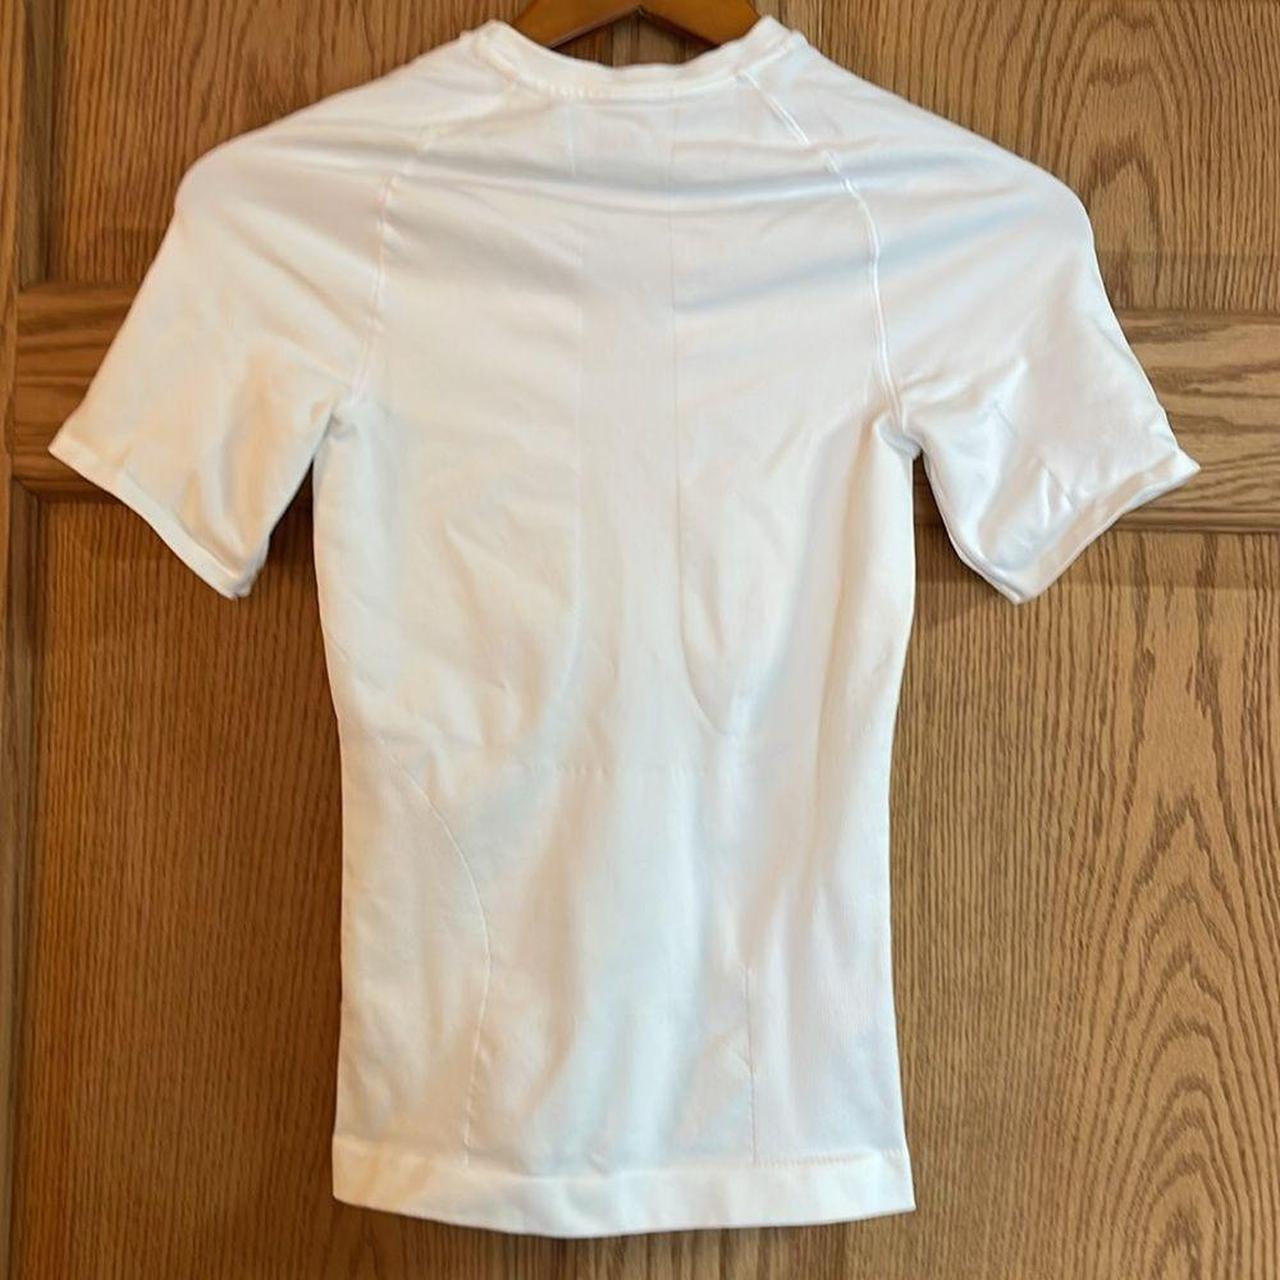 SPANX Mens White Sculpt Crew Neck T-Shirt Size - Depop